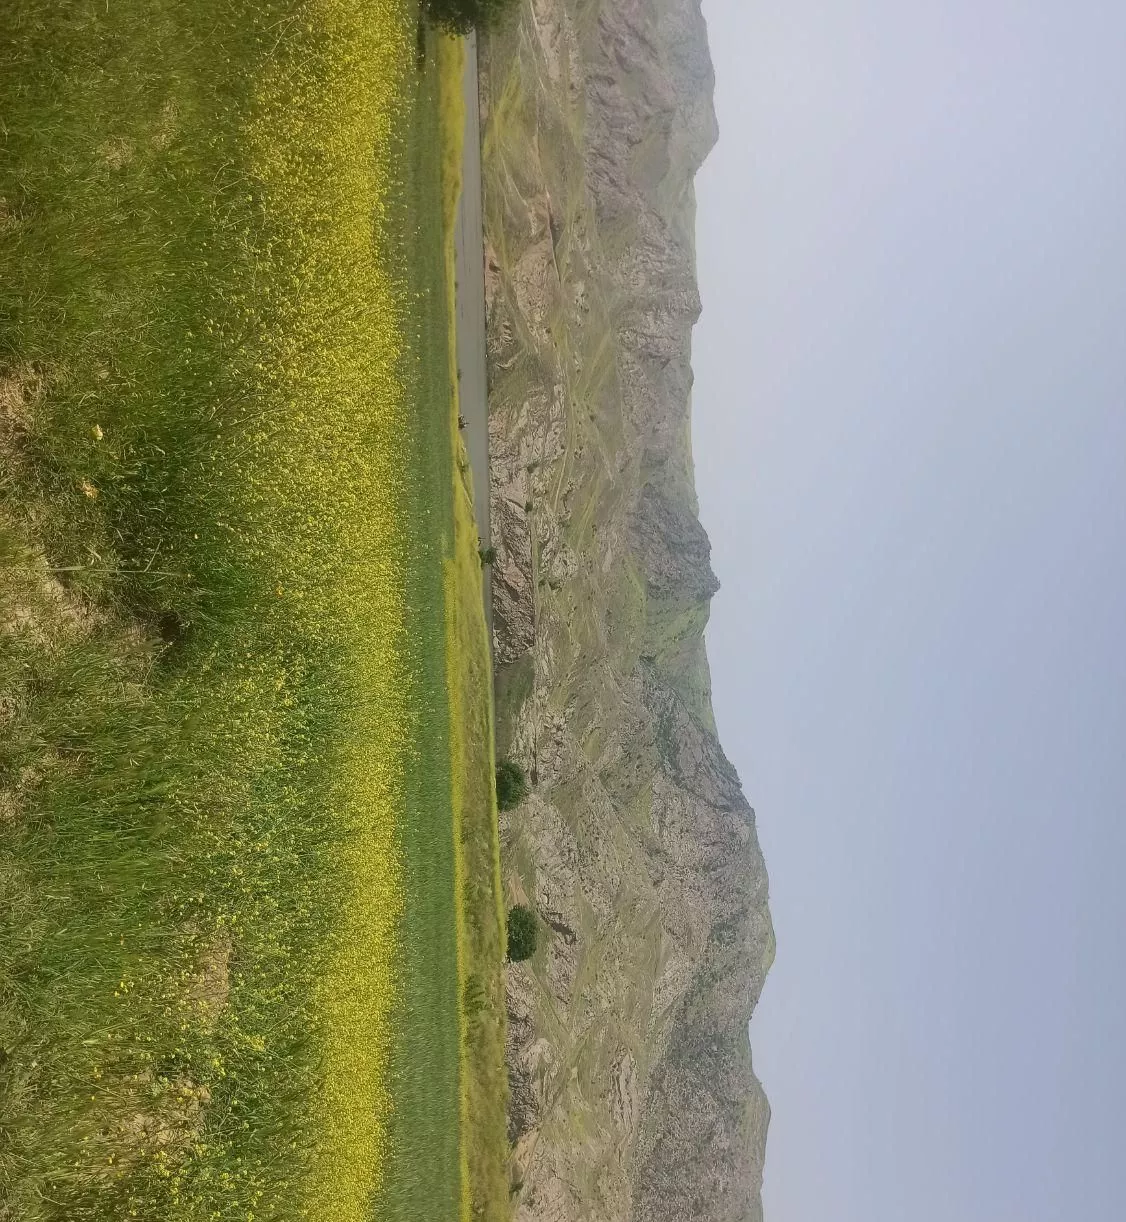 زمین خمارلو کنار دریاچه کفشن لاریجان